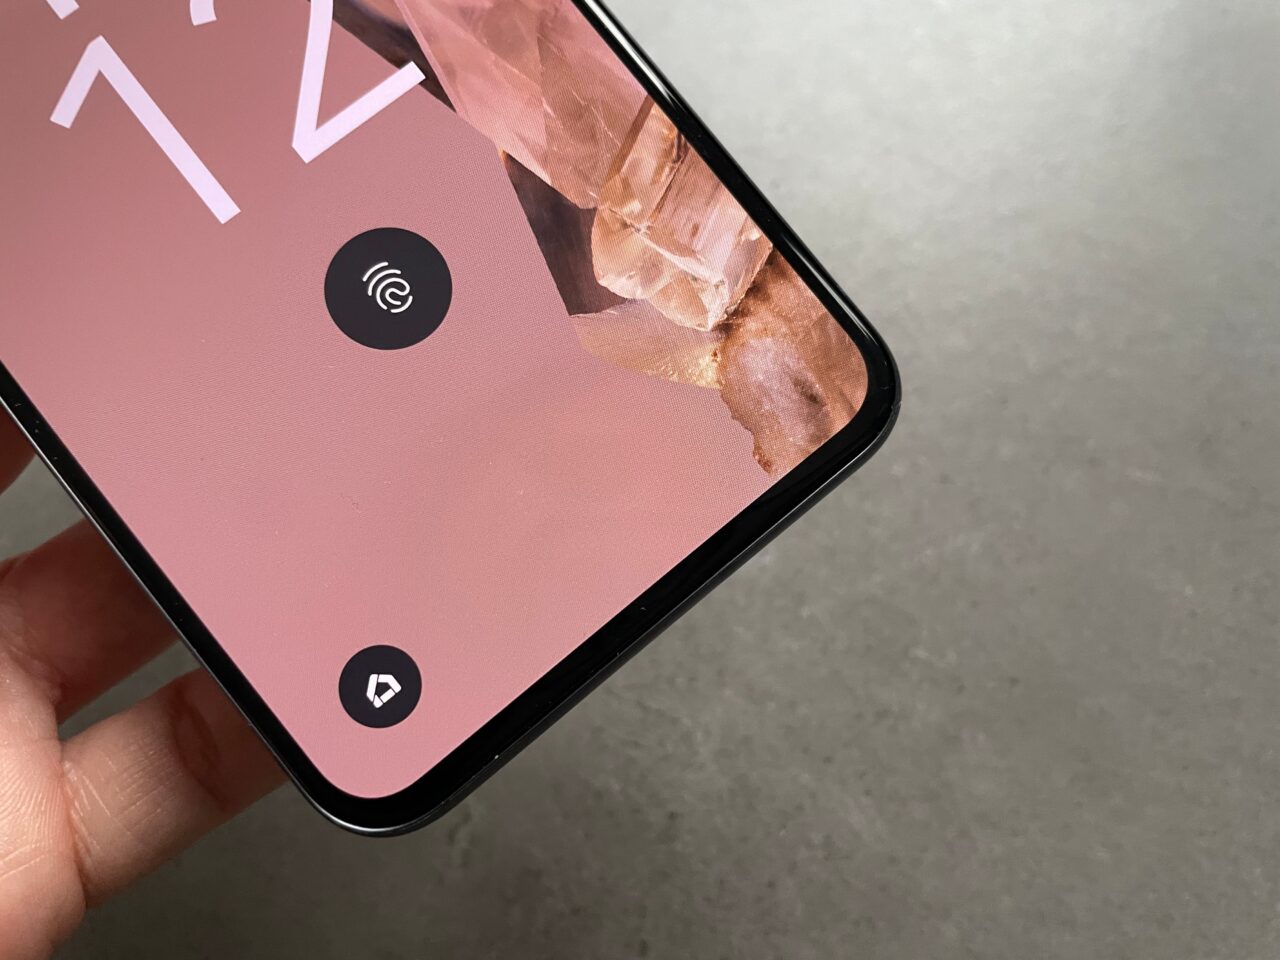 Ekran smartfona z graficznym tłem i widocznym symbolem odcisku palca, trzymany w dłoni na szarym tle.